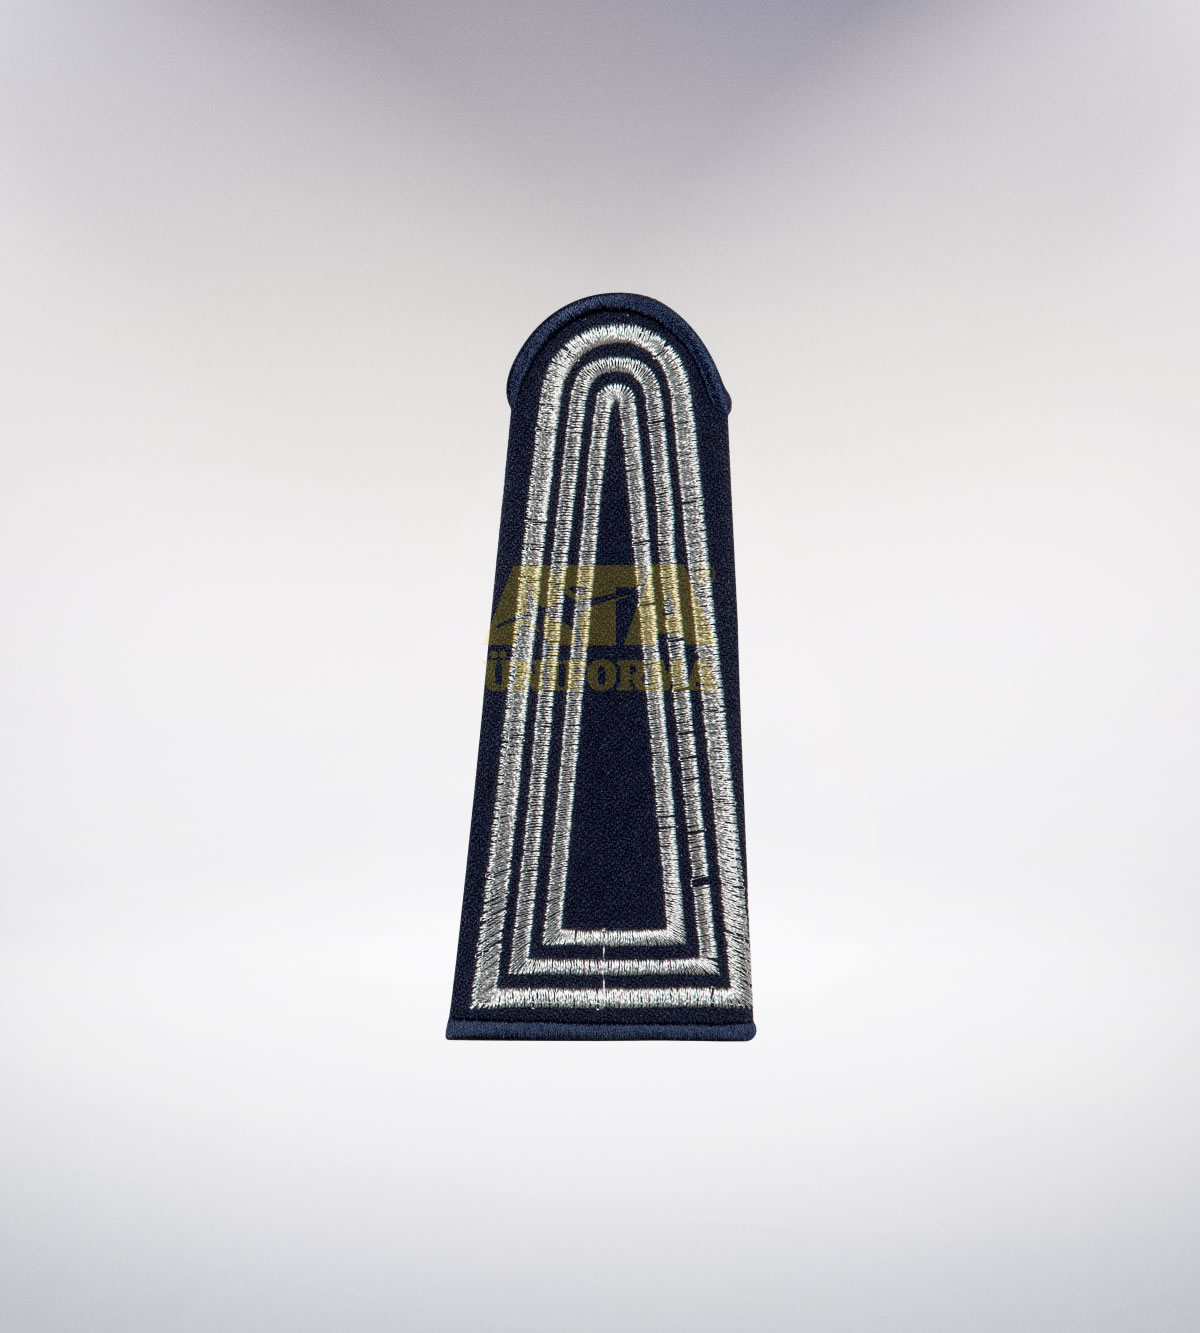 ATA 200 - Zabıta tören takımı - zabıta elbiseleri | zabıta üniformaları | zabıta kıyafetleri 